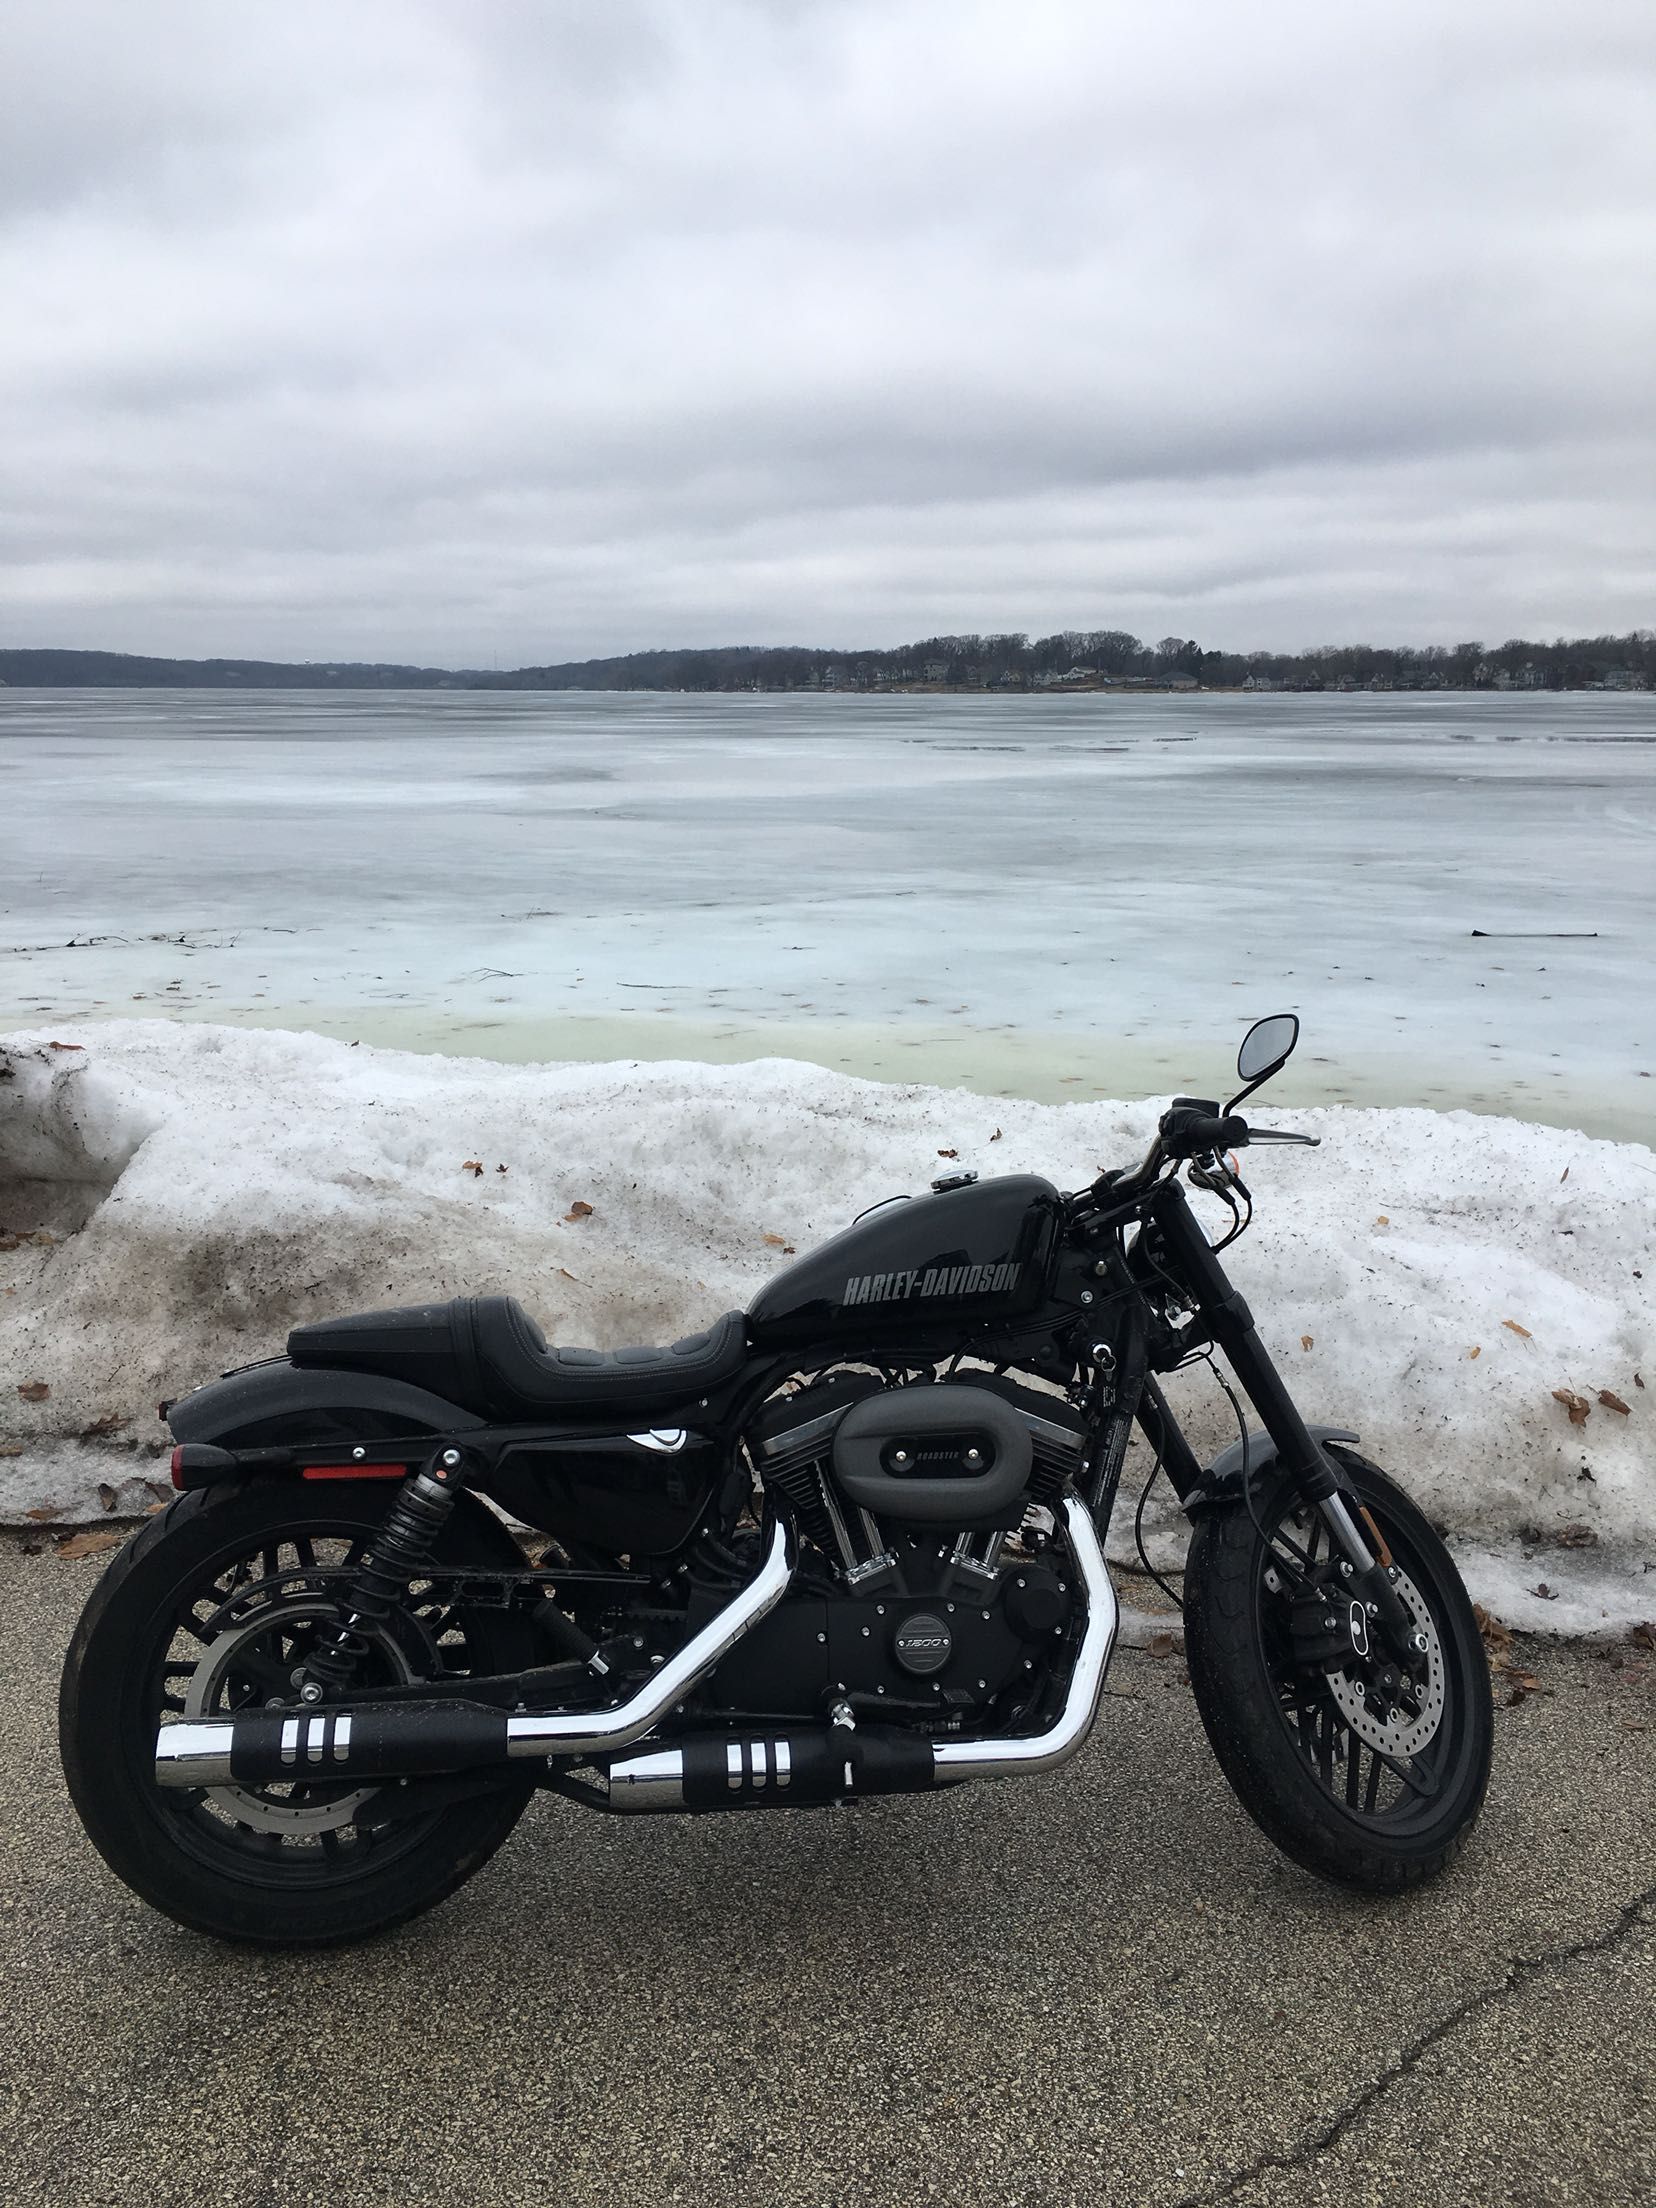 Frozen lake in Wisconsin